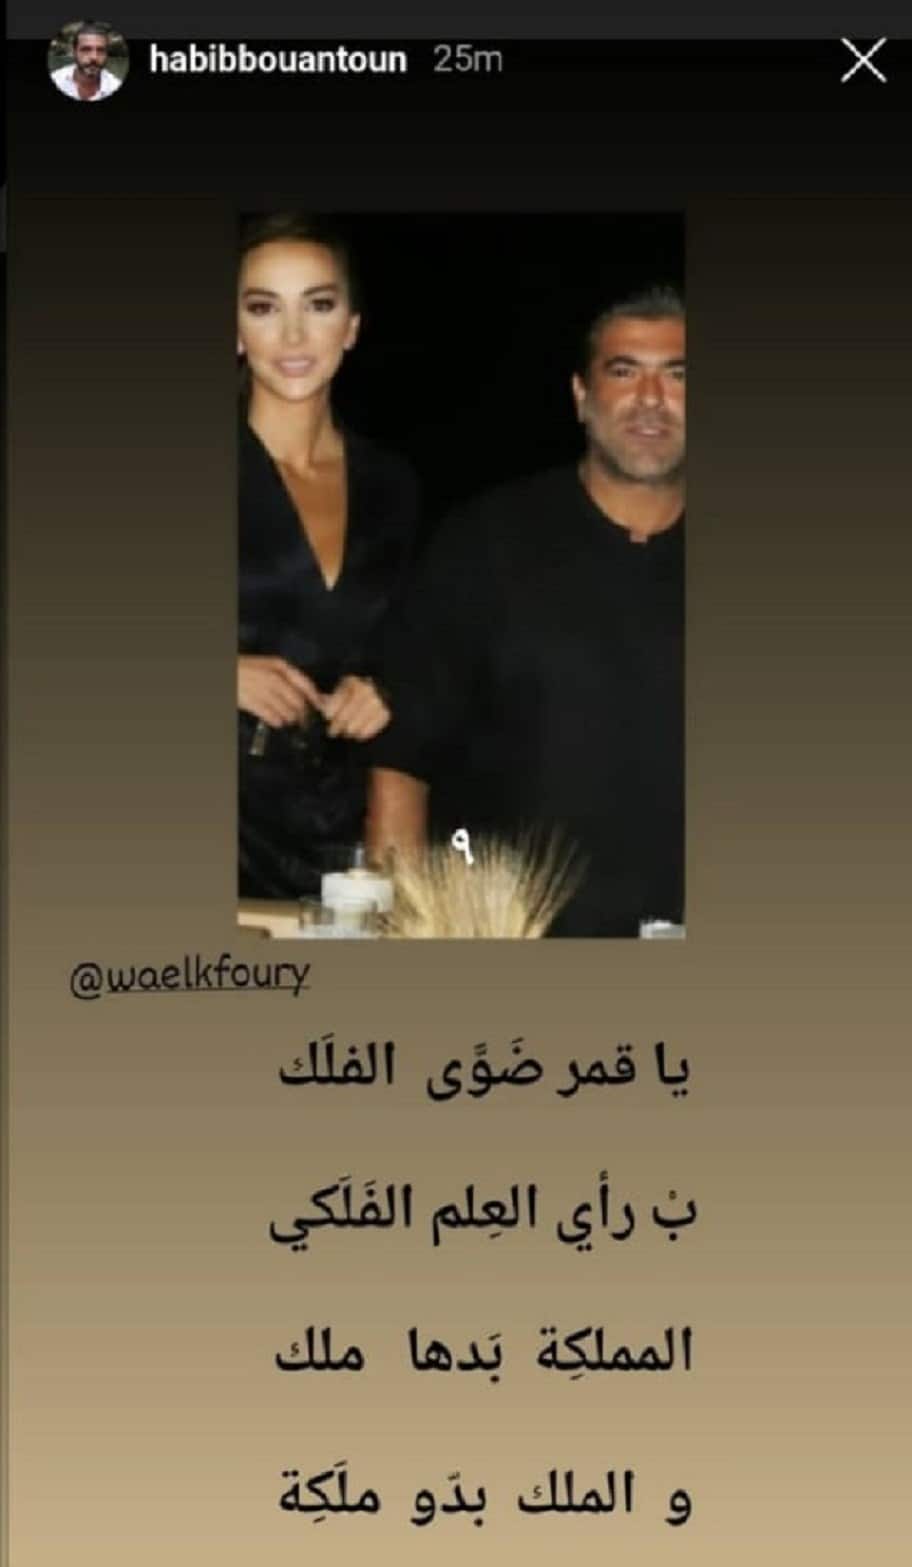 Wael Kfoury avioliitto, ja kuka on Shana Abboud, nainen, jonka hänen sydämensä valitsi?